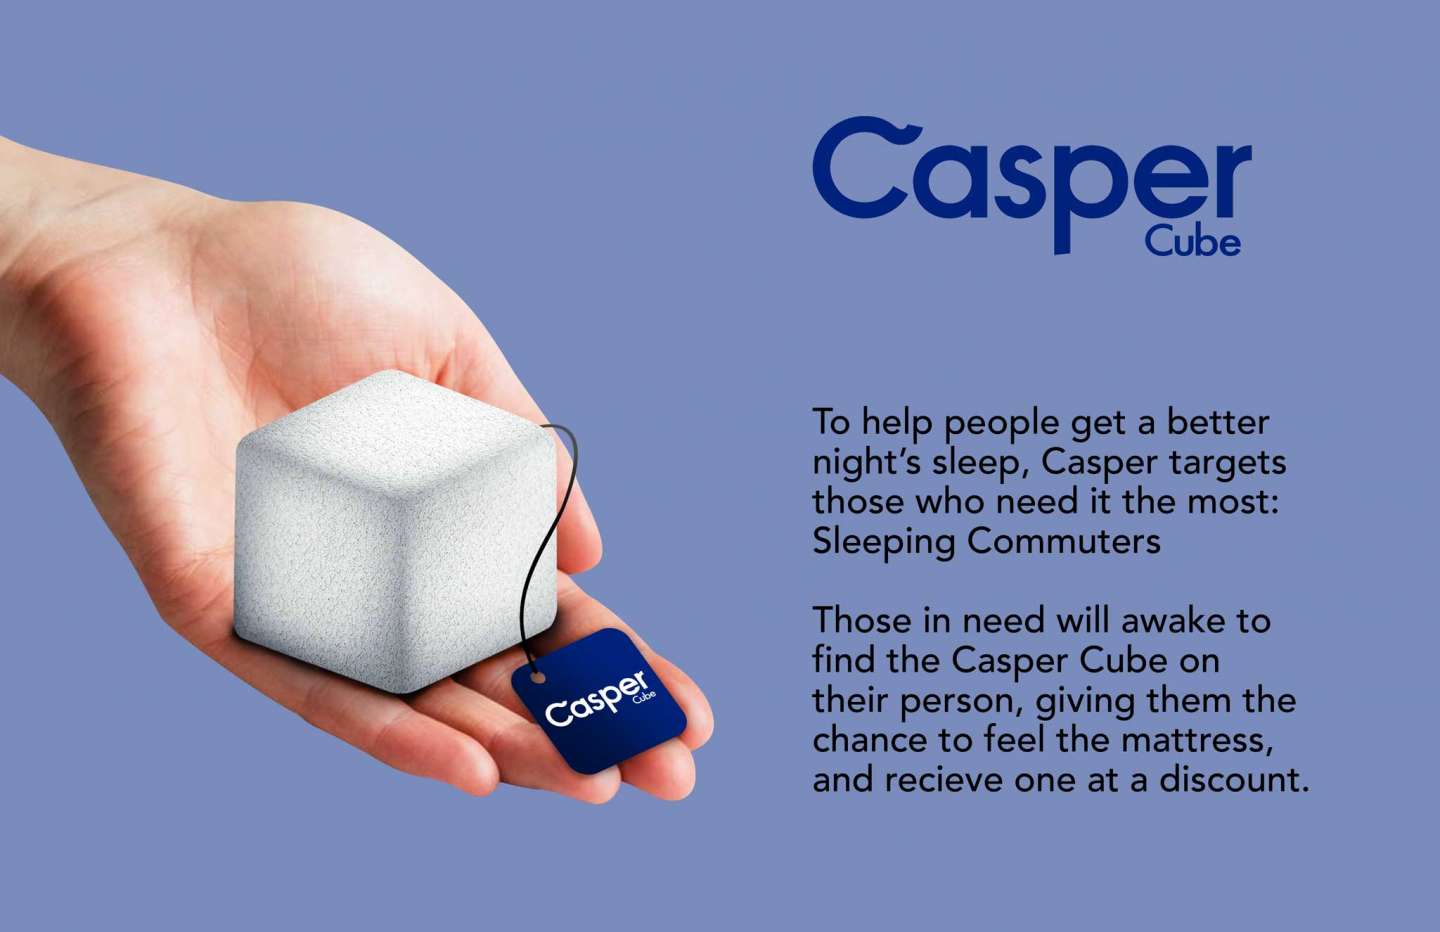 Casper Cube